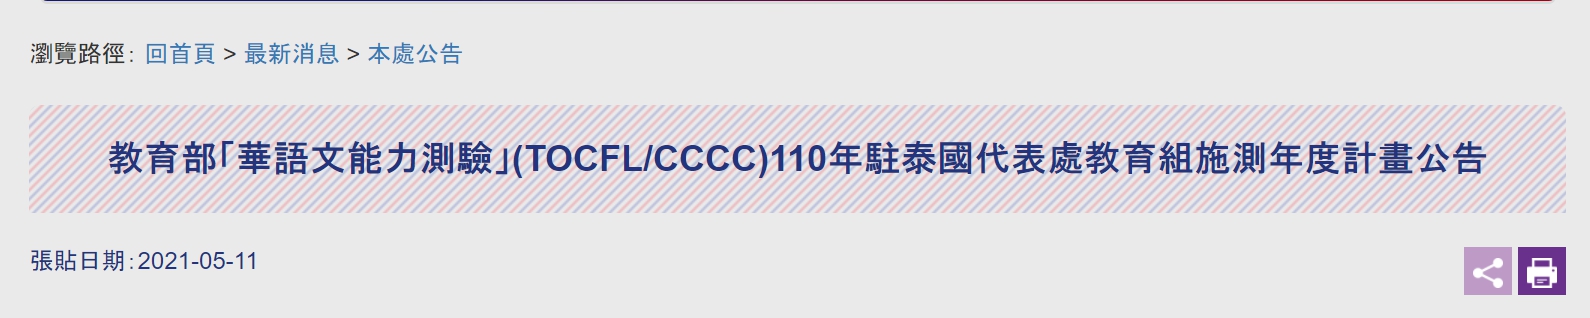 【110.5.13】 【更新】教育部「華語文能力測驗」(TOCFL/CCCC)110年駐泰國代表處教育組施測年度計畫公告